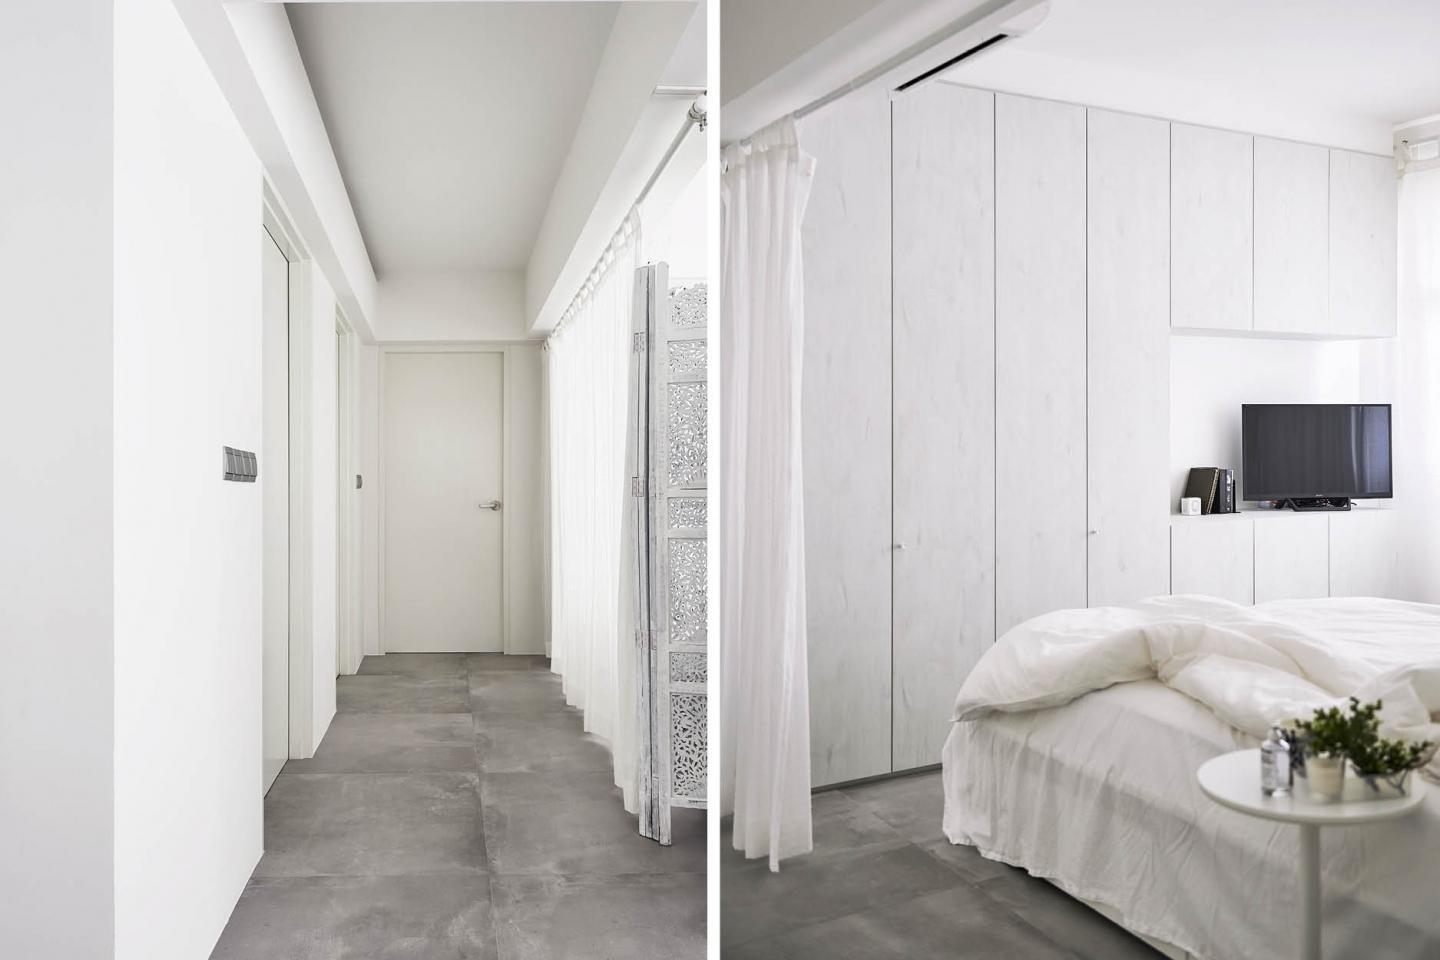 質感豐富的地板跟純白裝飾和傢具打造出鮮明悅目的對比